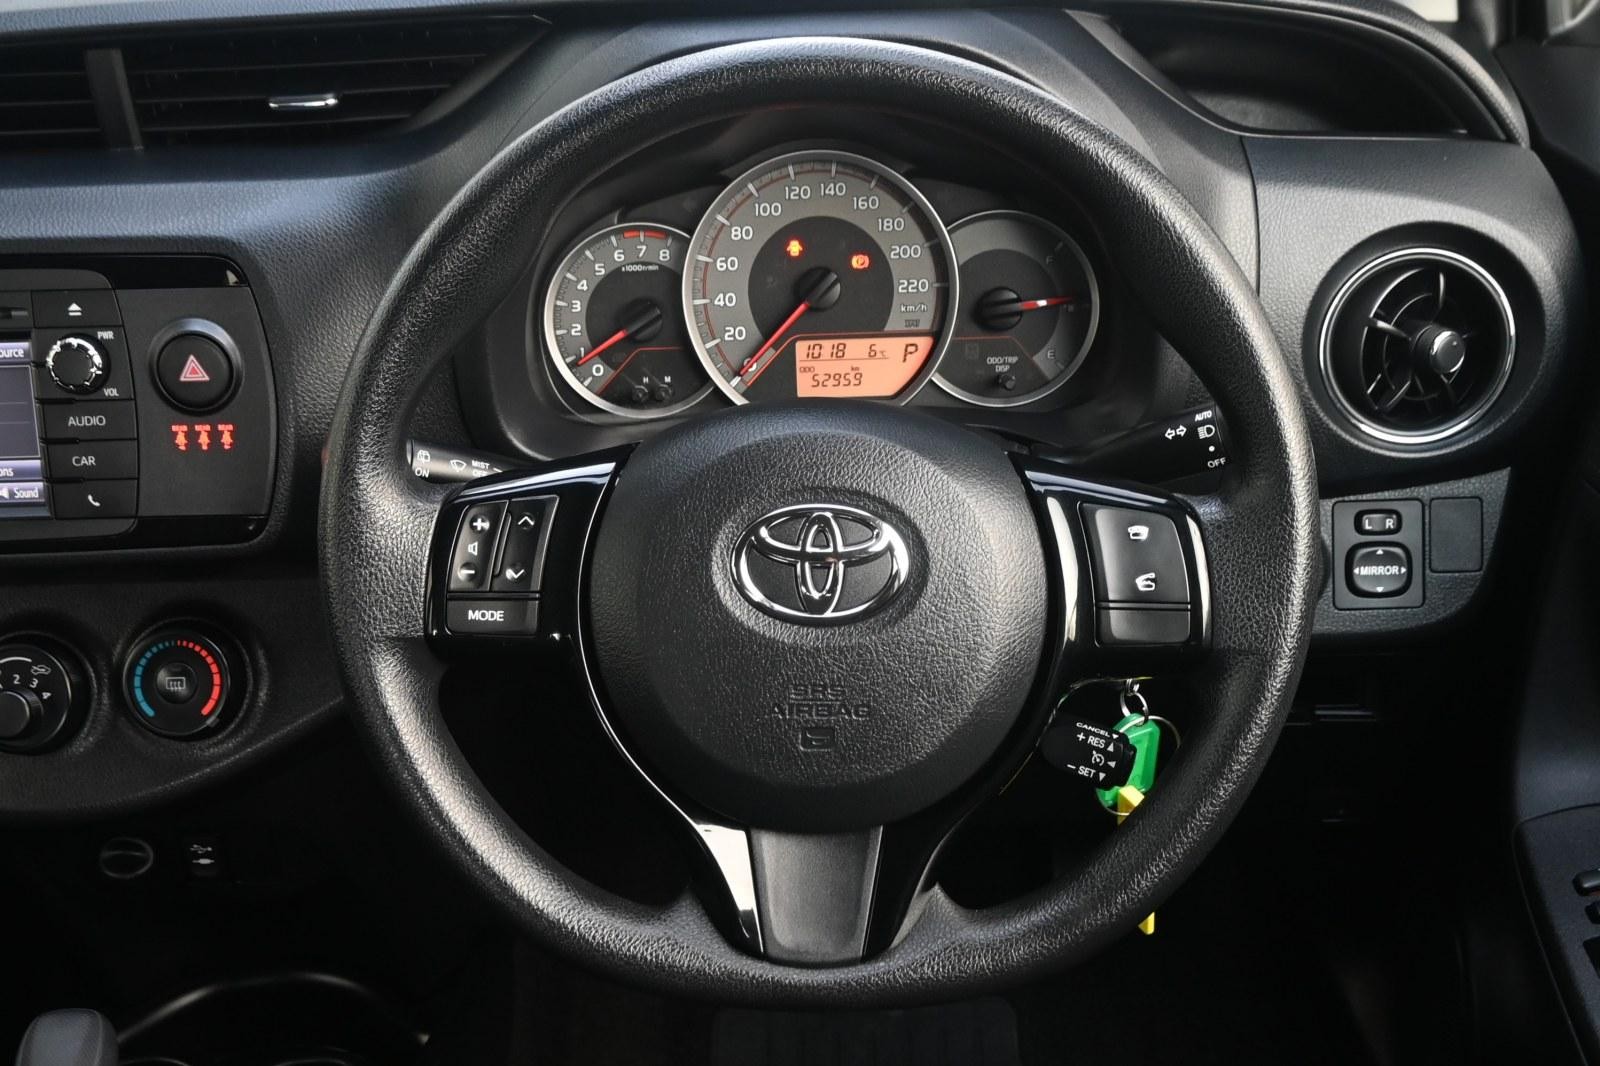 Toyota Yaris image 4